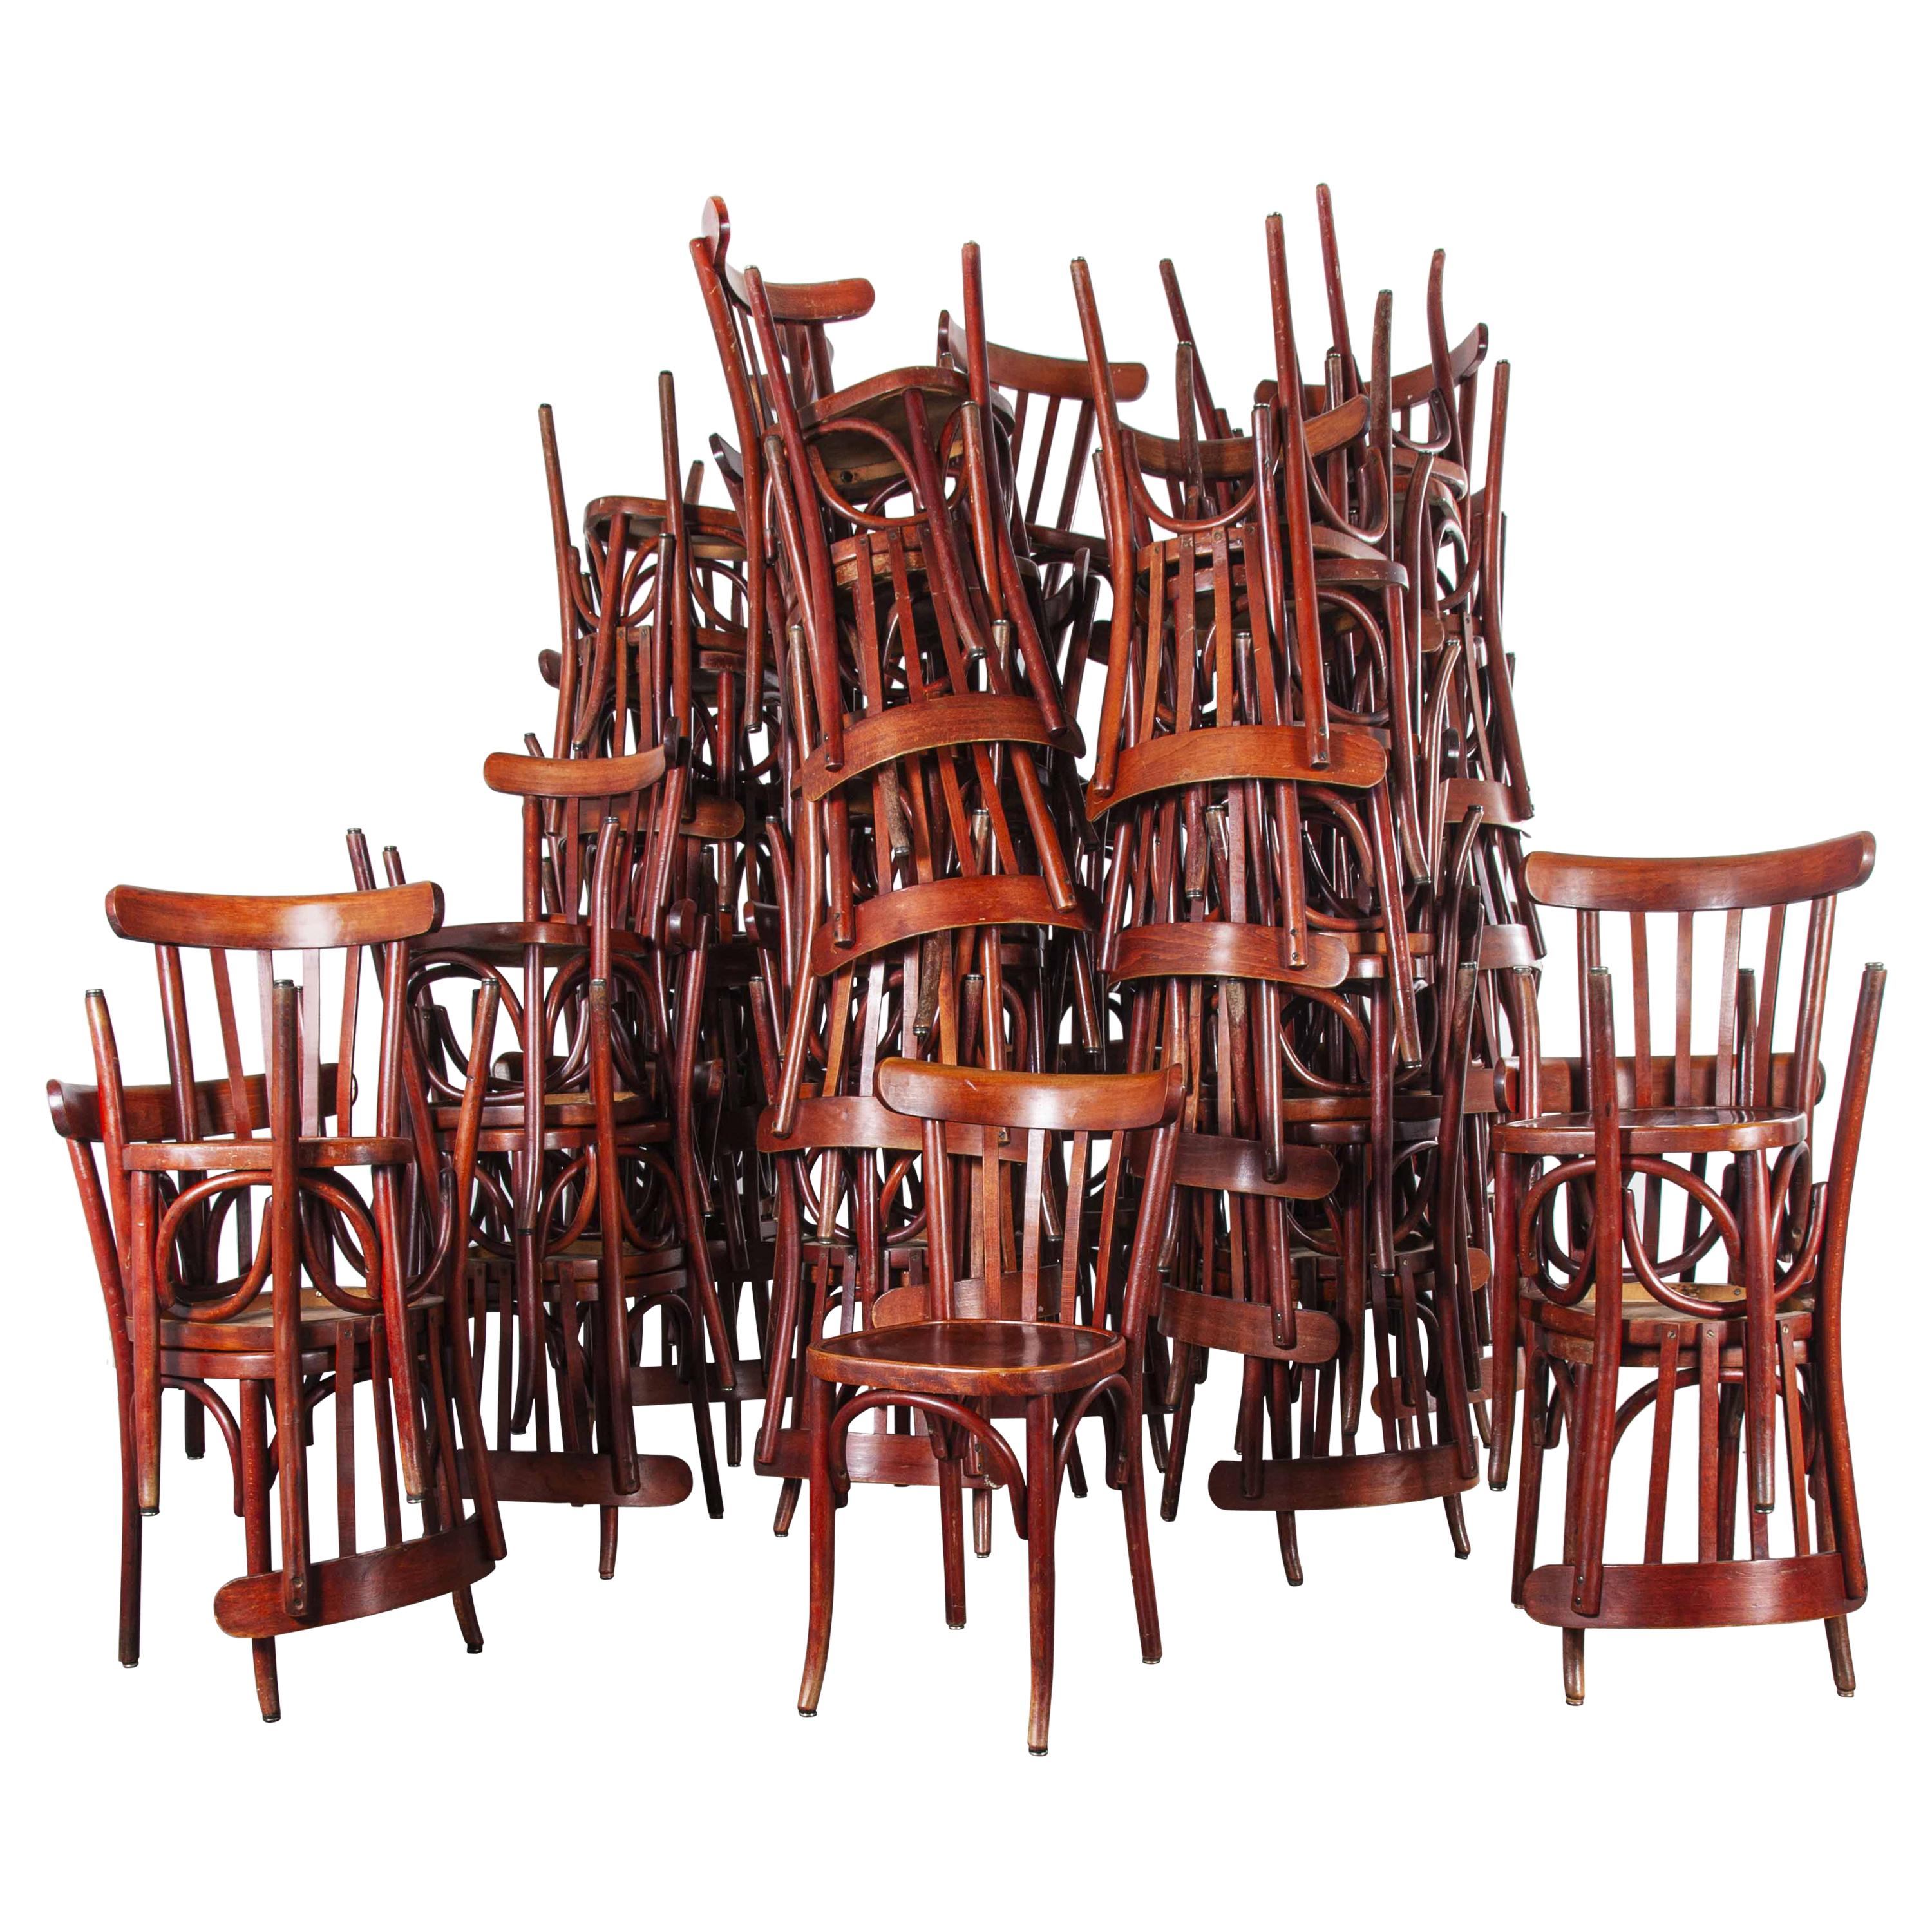 1950s Baumann Bentwood Bistro Dining Chair, Spice